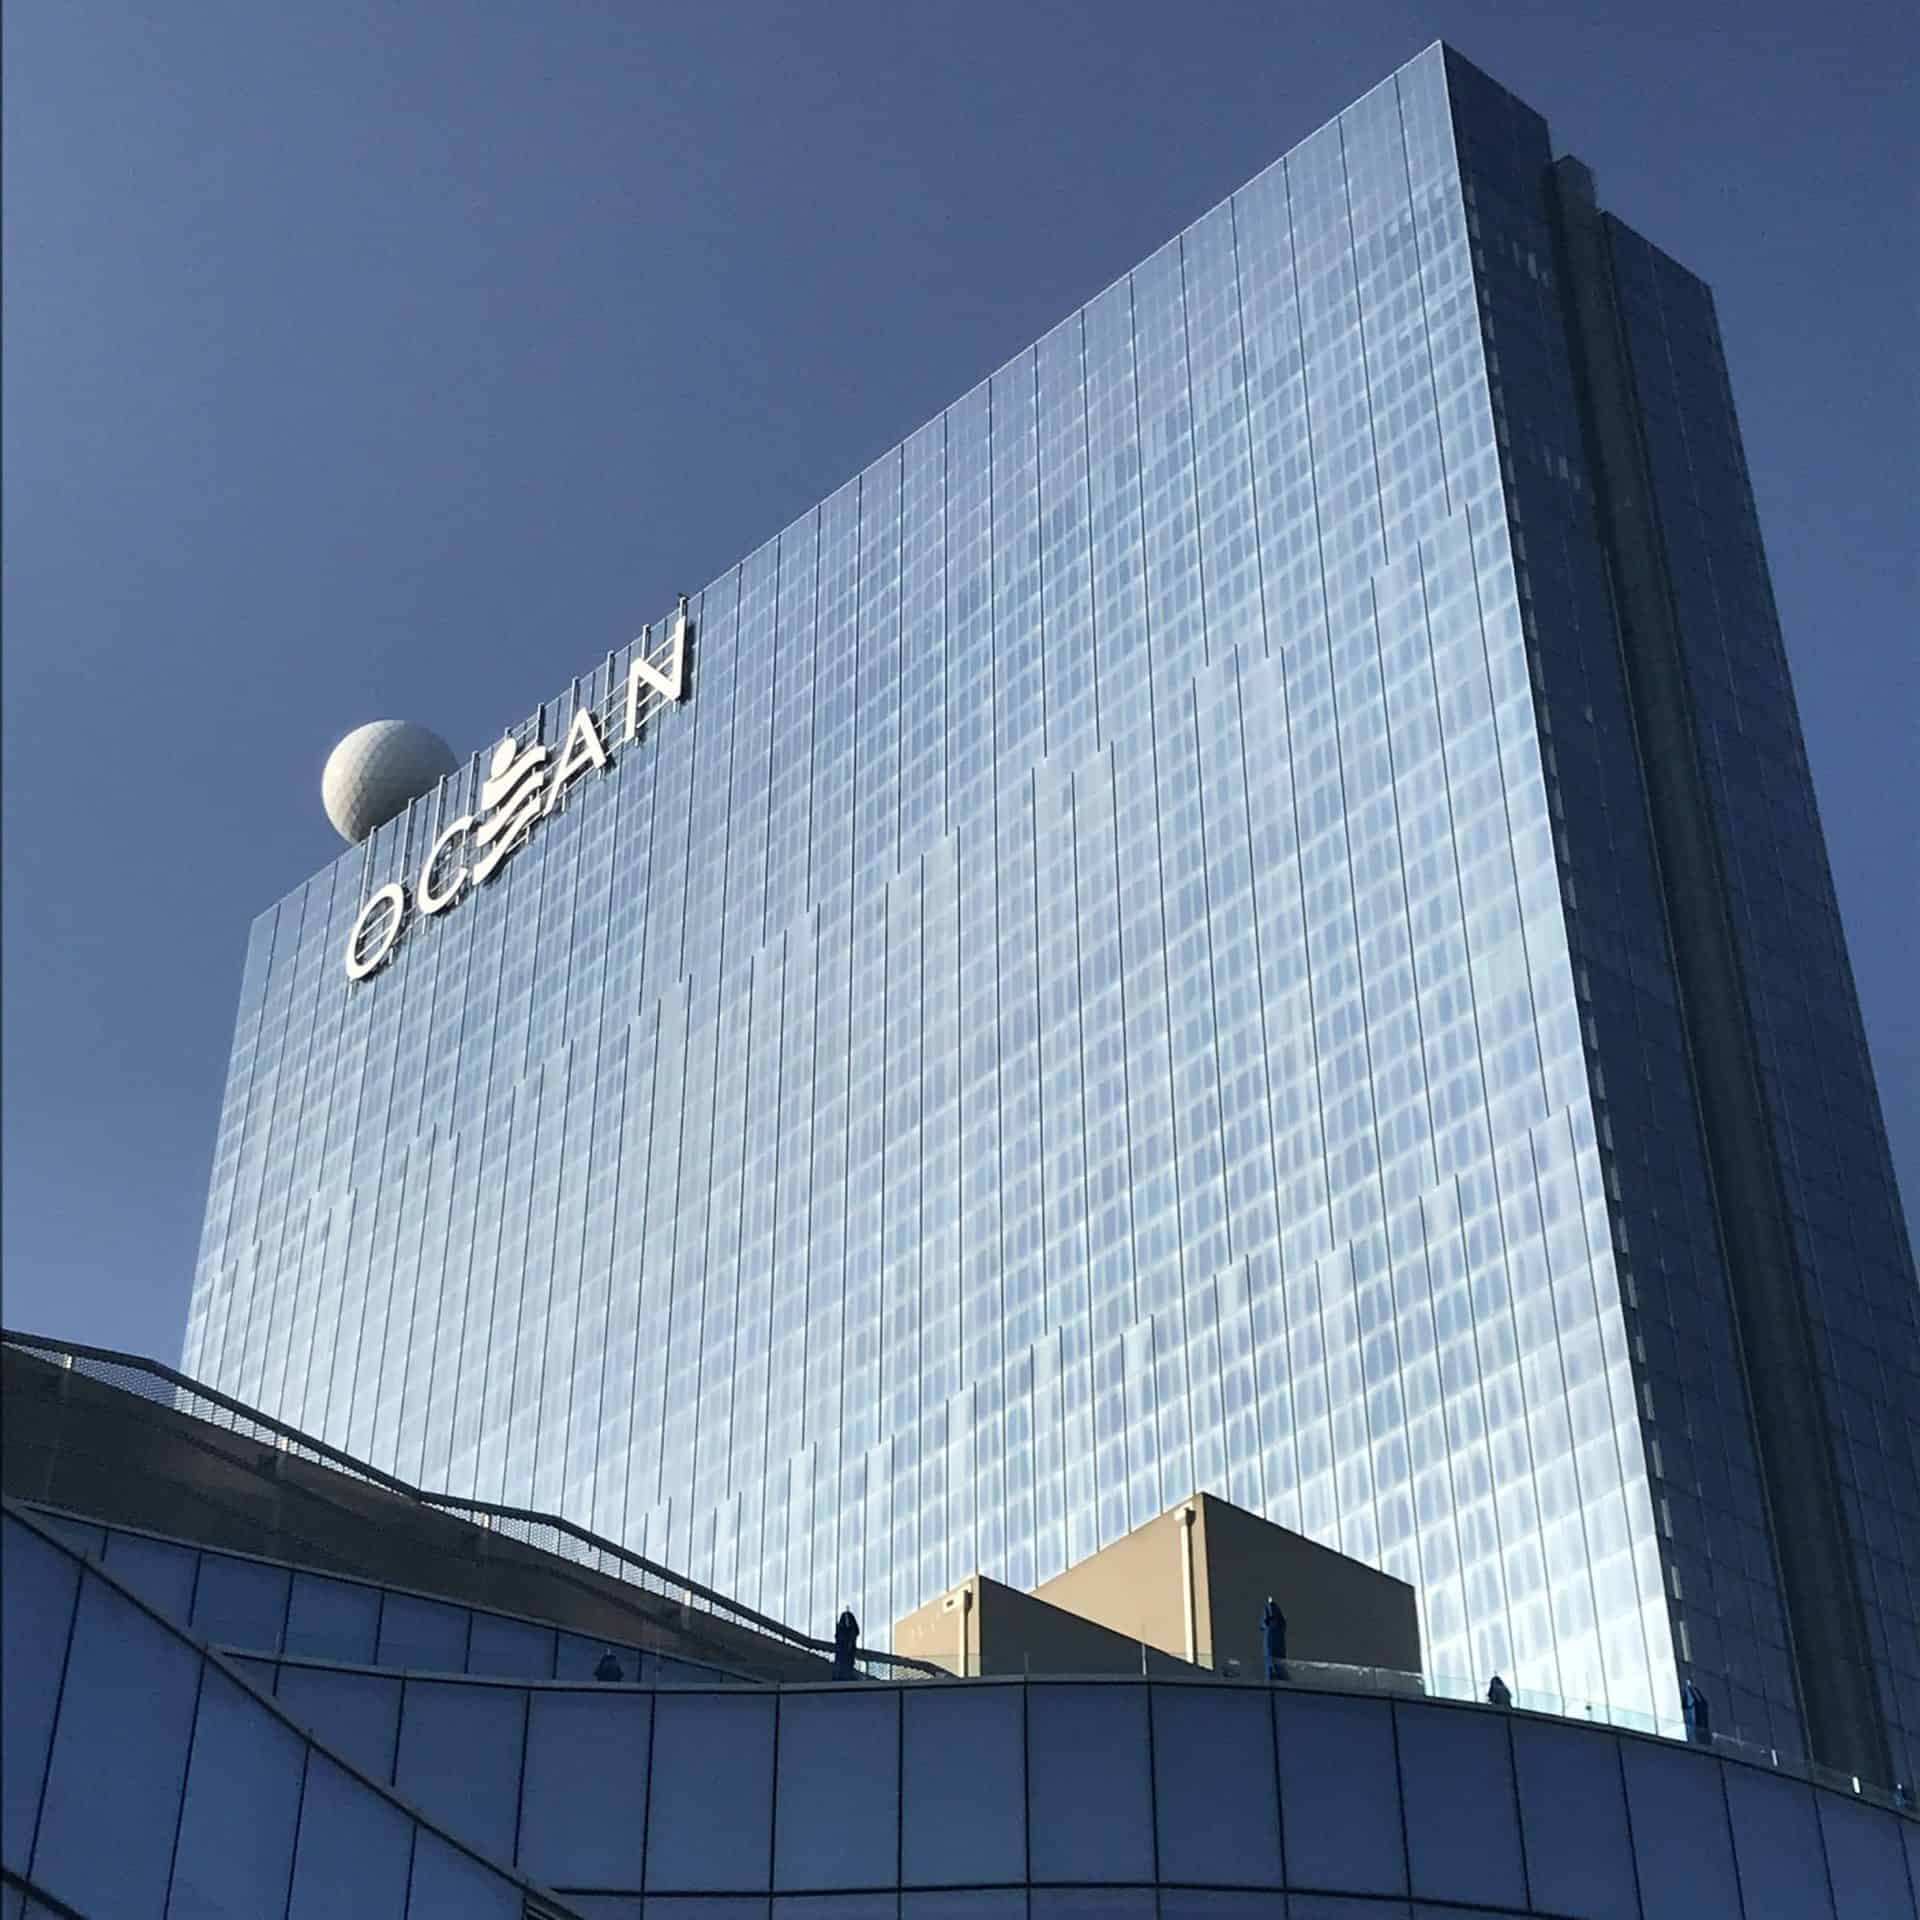 ocean city casinos